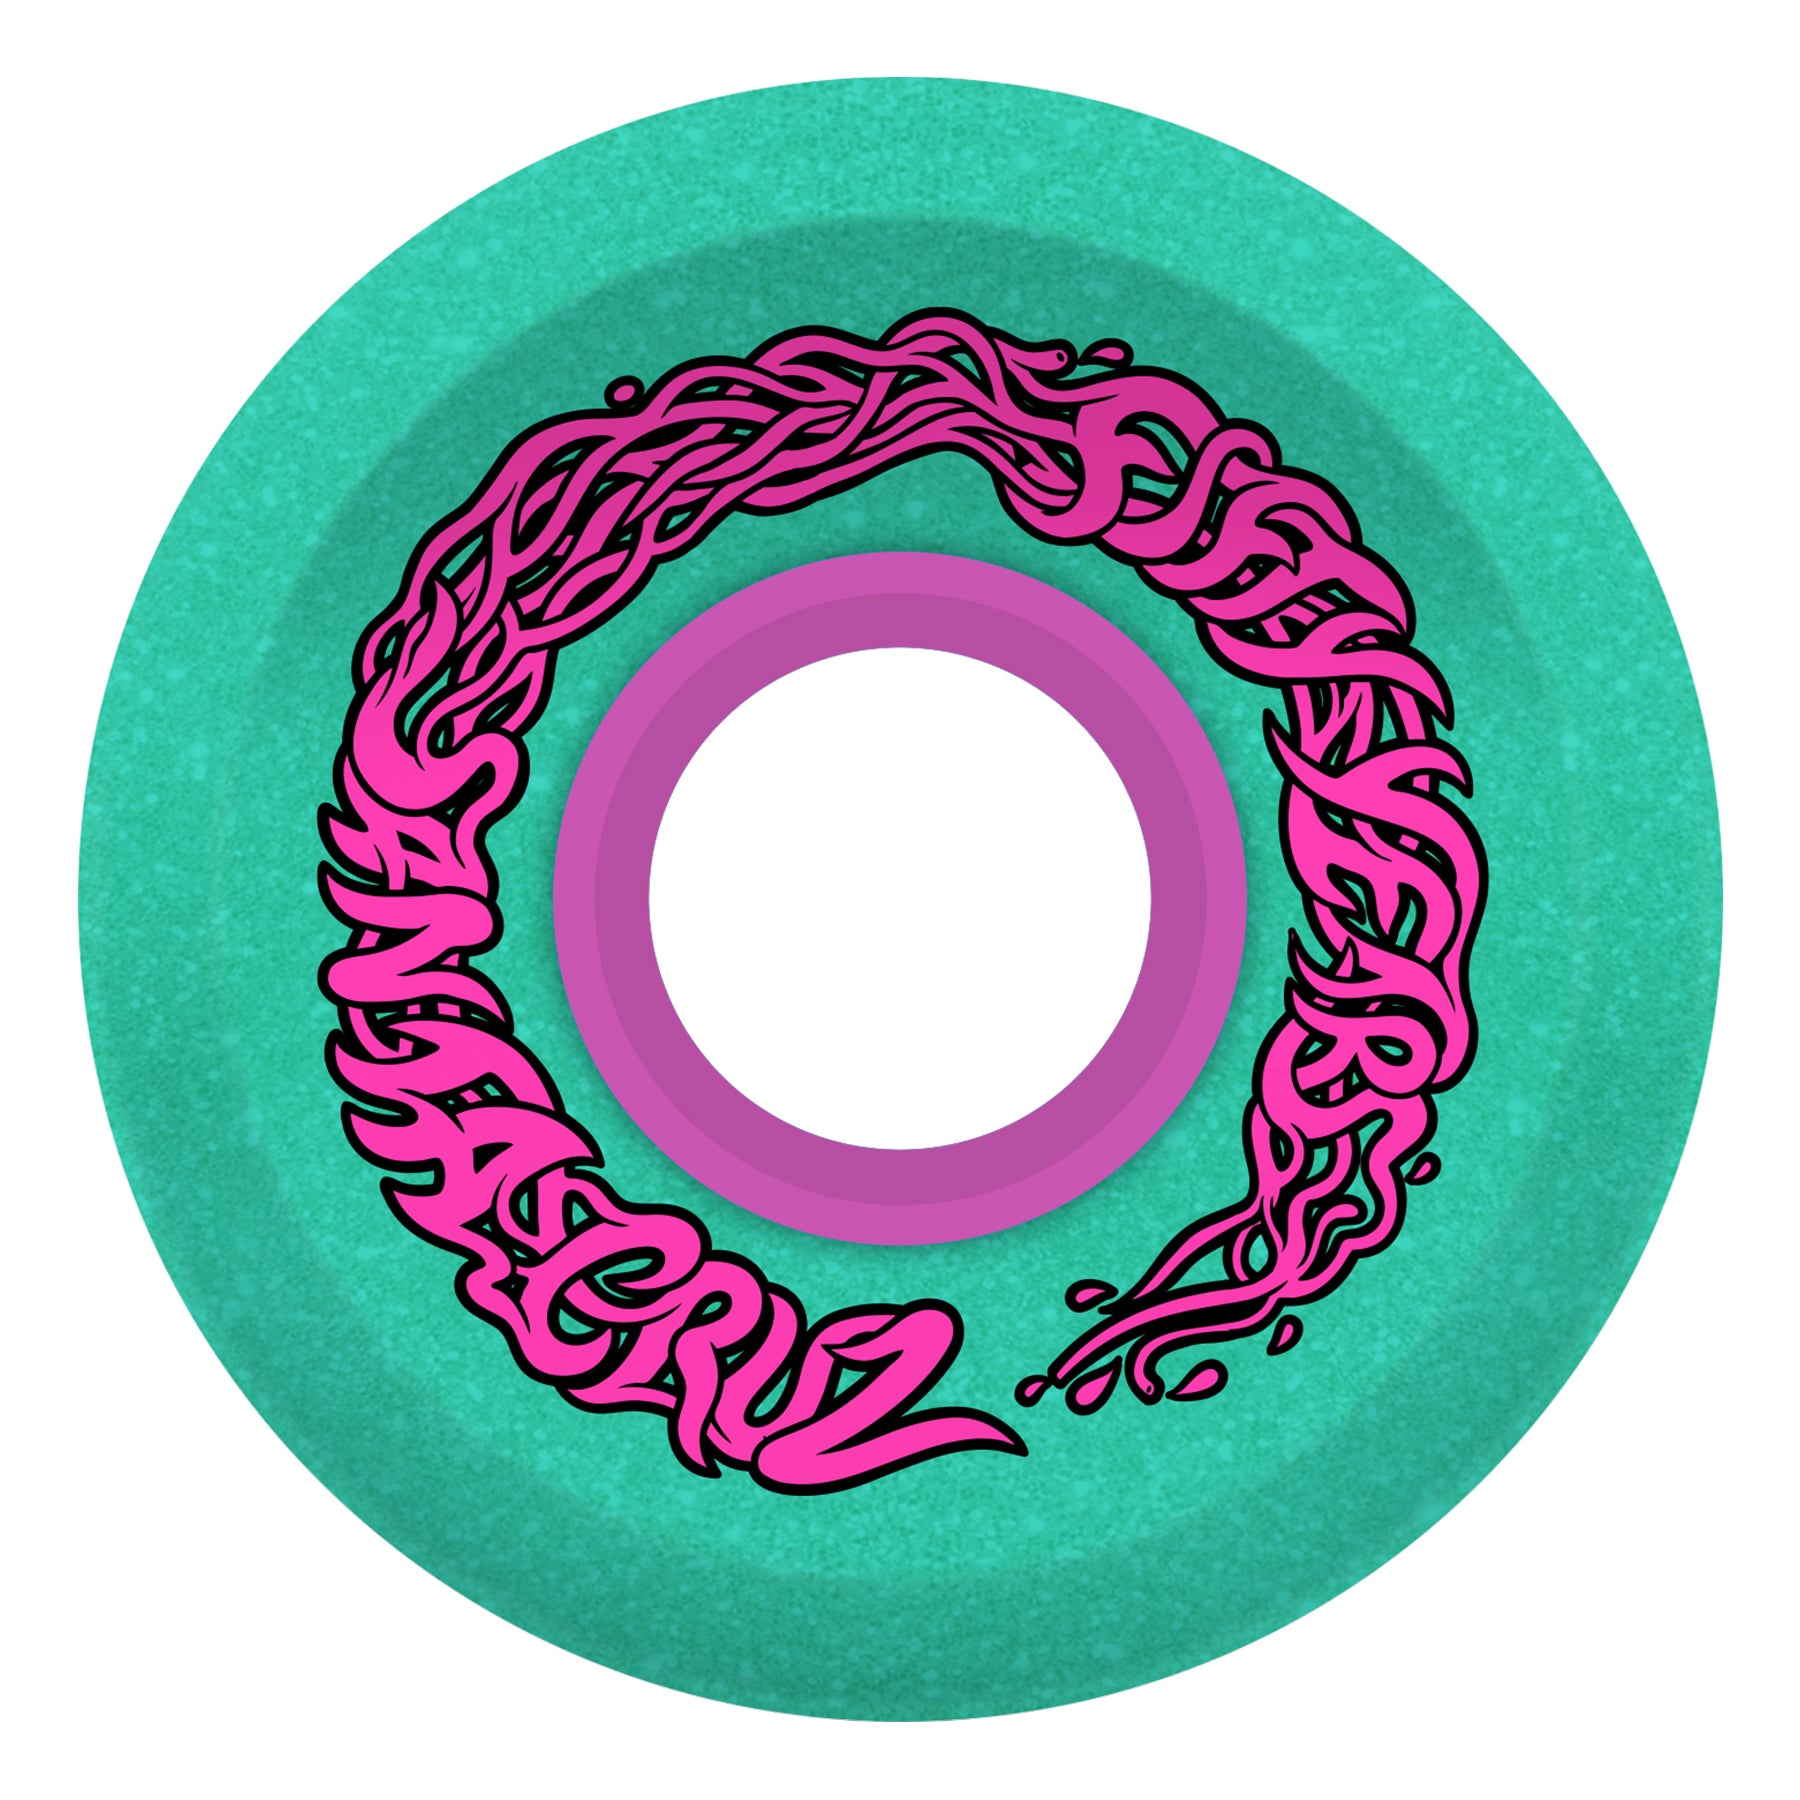 OG Slime 78a Slime Balls 66mm Pink Skateboard Wheels – Stoked Boardshop